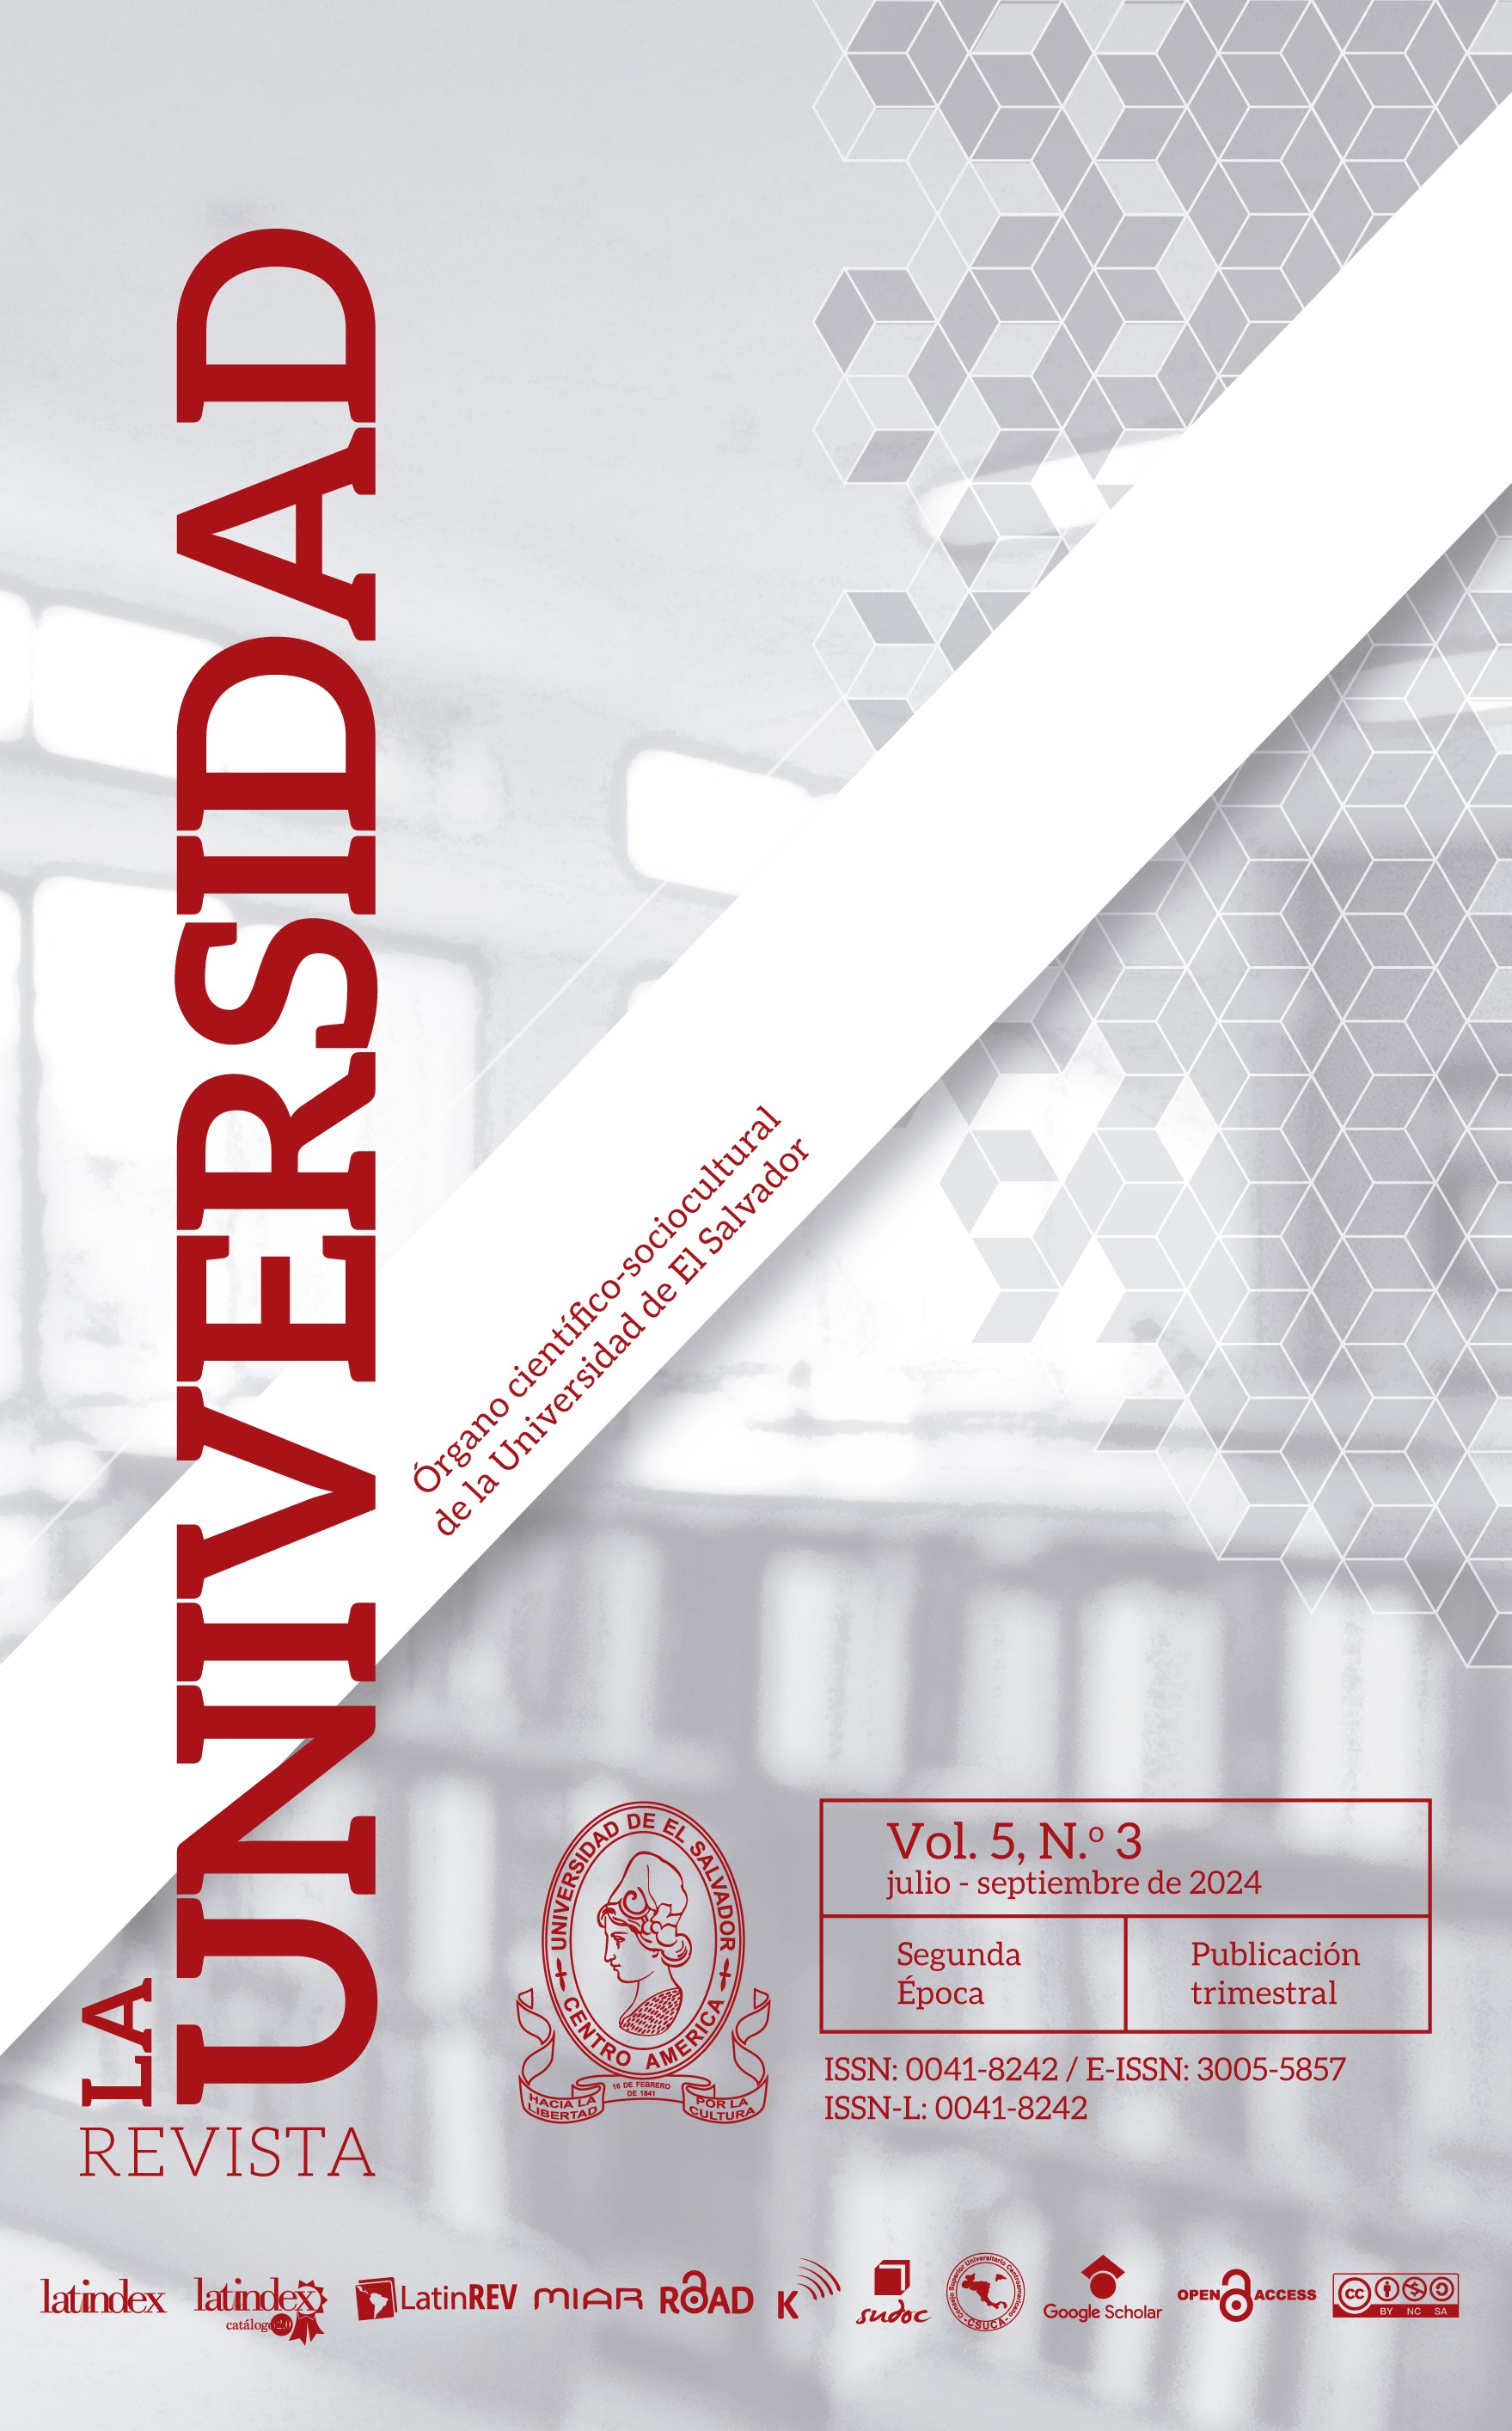 					Ver La Universidad Segunda Época, Volumen 5 N.° 3, julio - septiembre 2024
				